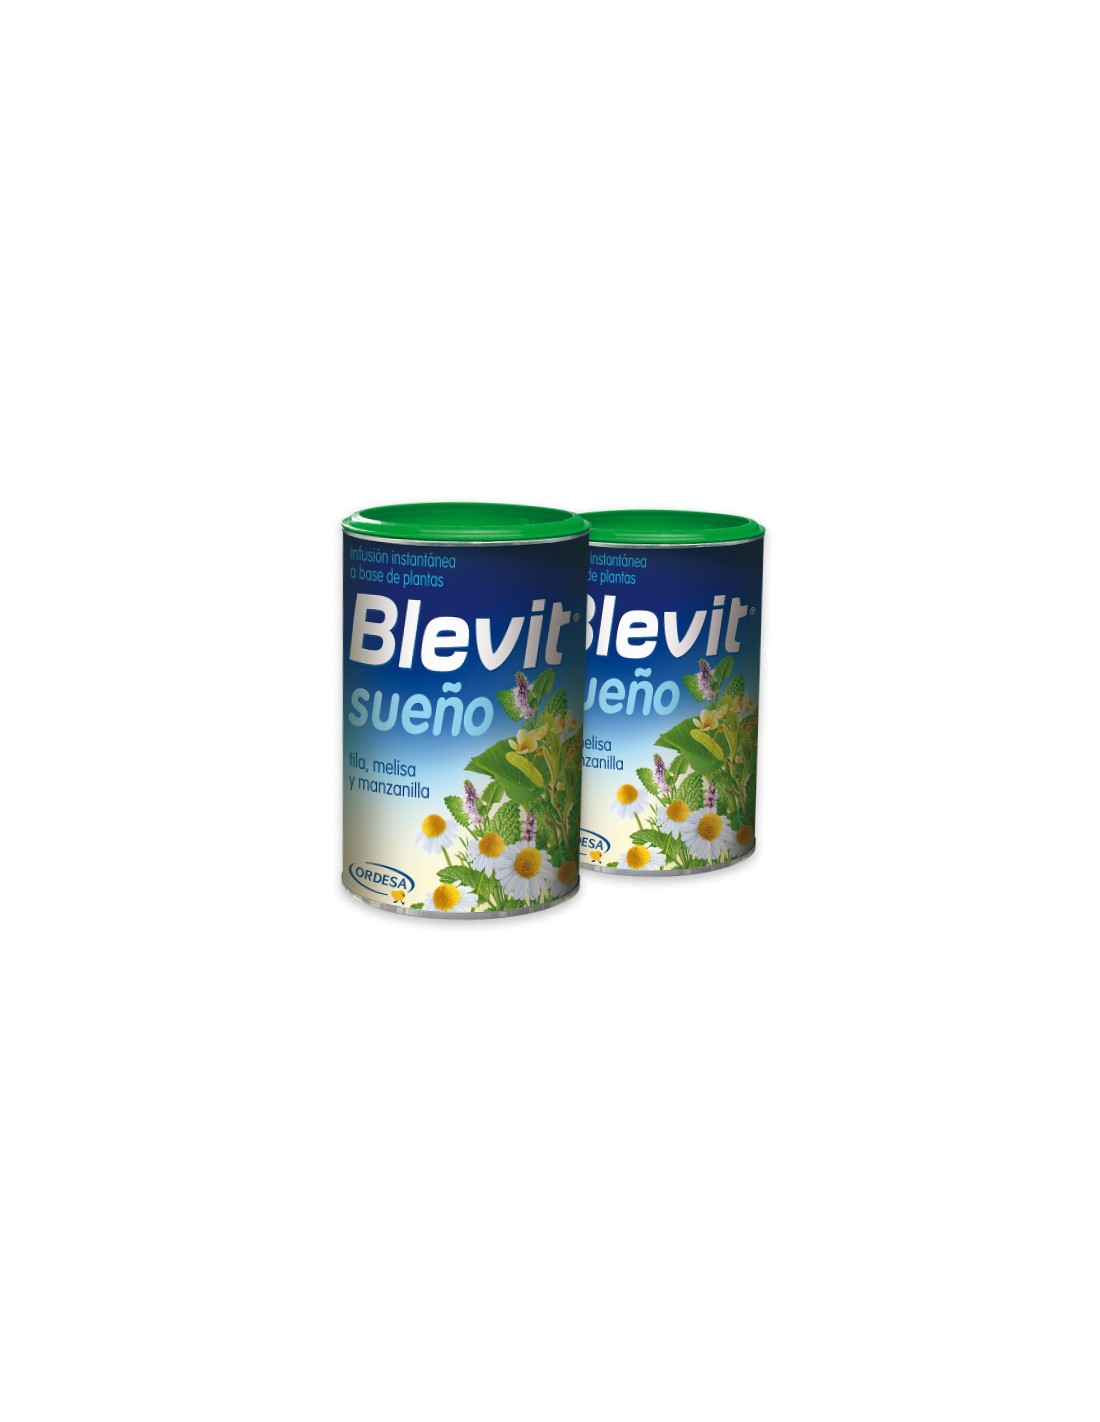 Blevit sueño😴, es una infusión - Farmacia San Miguel